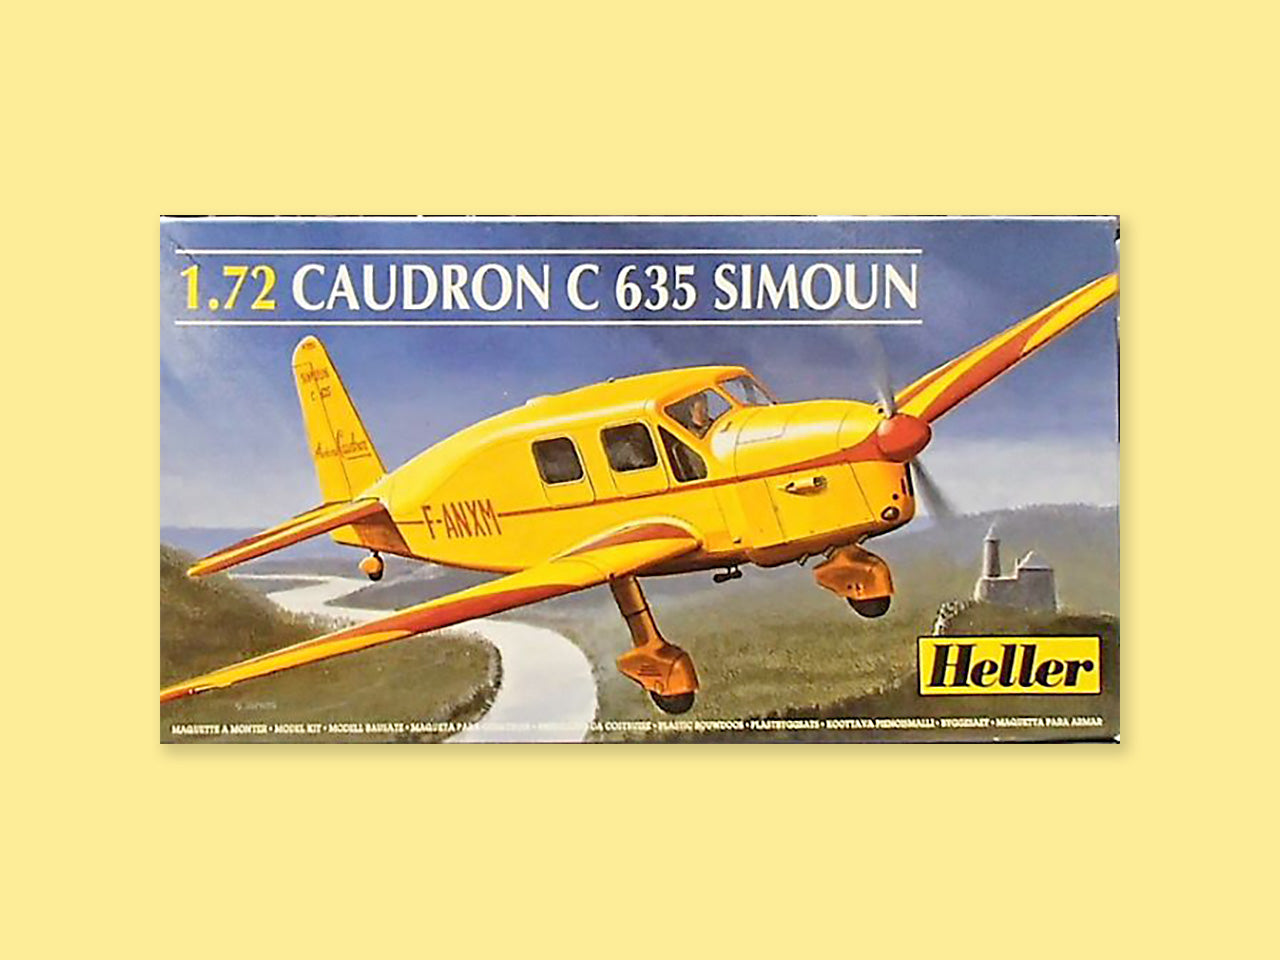 Caudron C. 635 "Simoun"